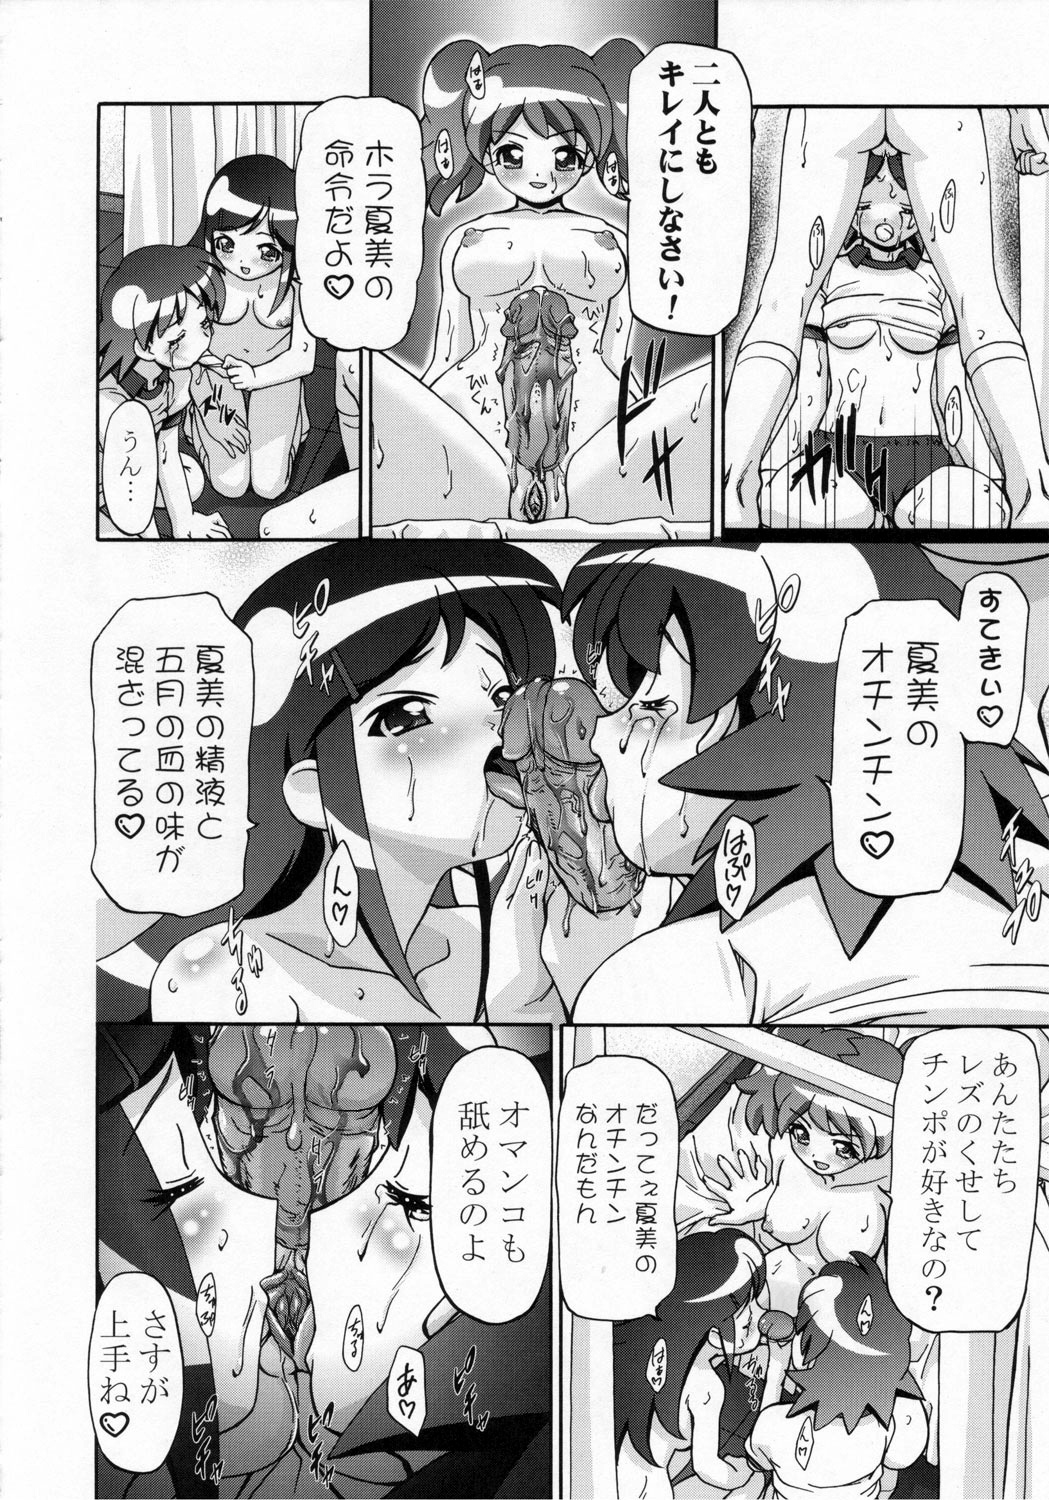 (SC31) [Gambler Club (Kousaka Jun)] Natsu Yuki - Summer Snow (Keroro Gunsou) page 27 full